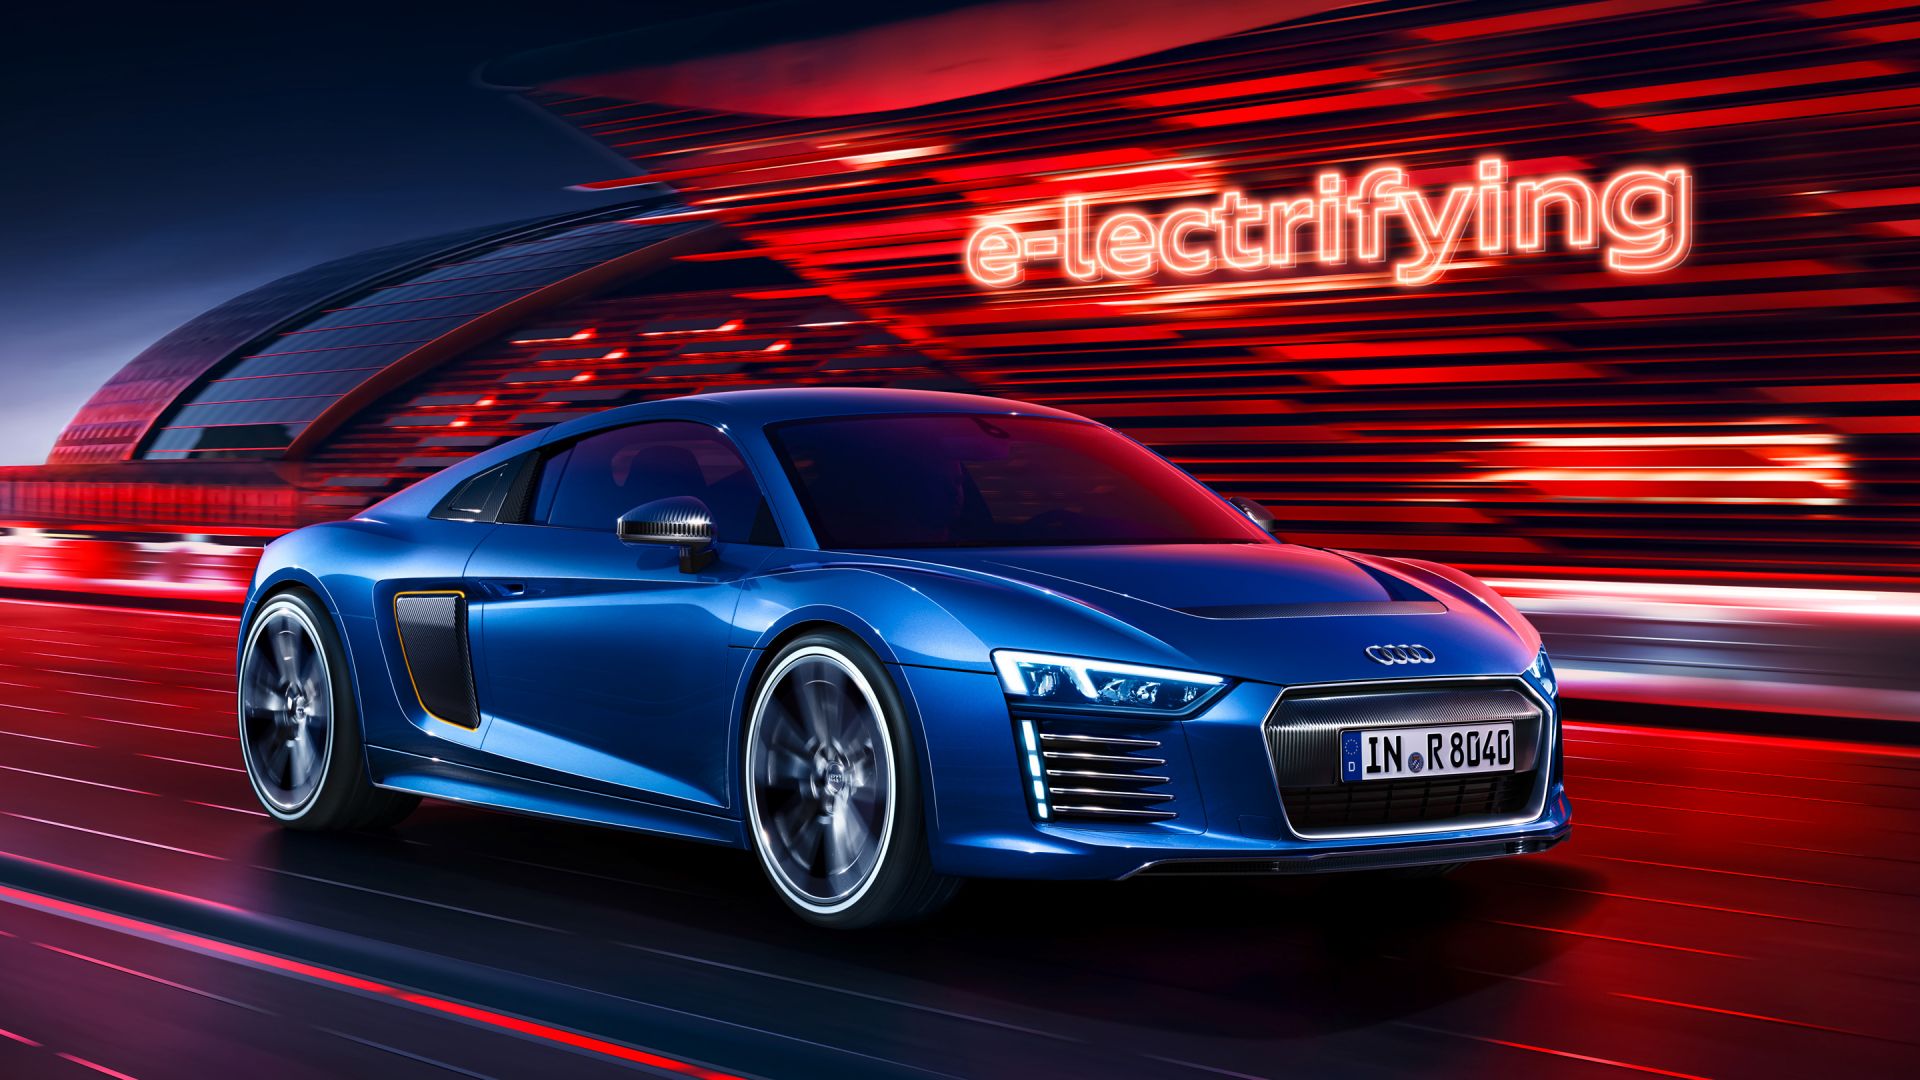 Wallpaper Audi R8 e-tron, electrifying, blue car